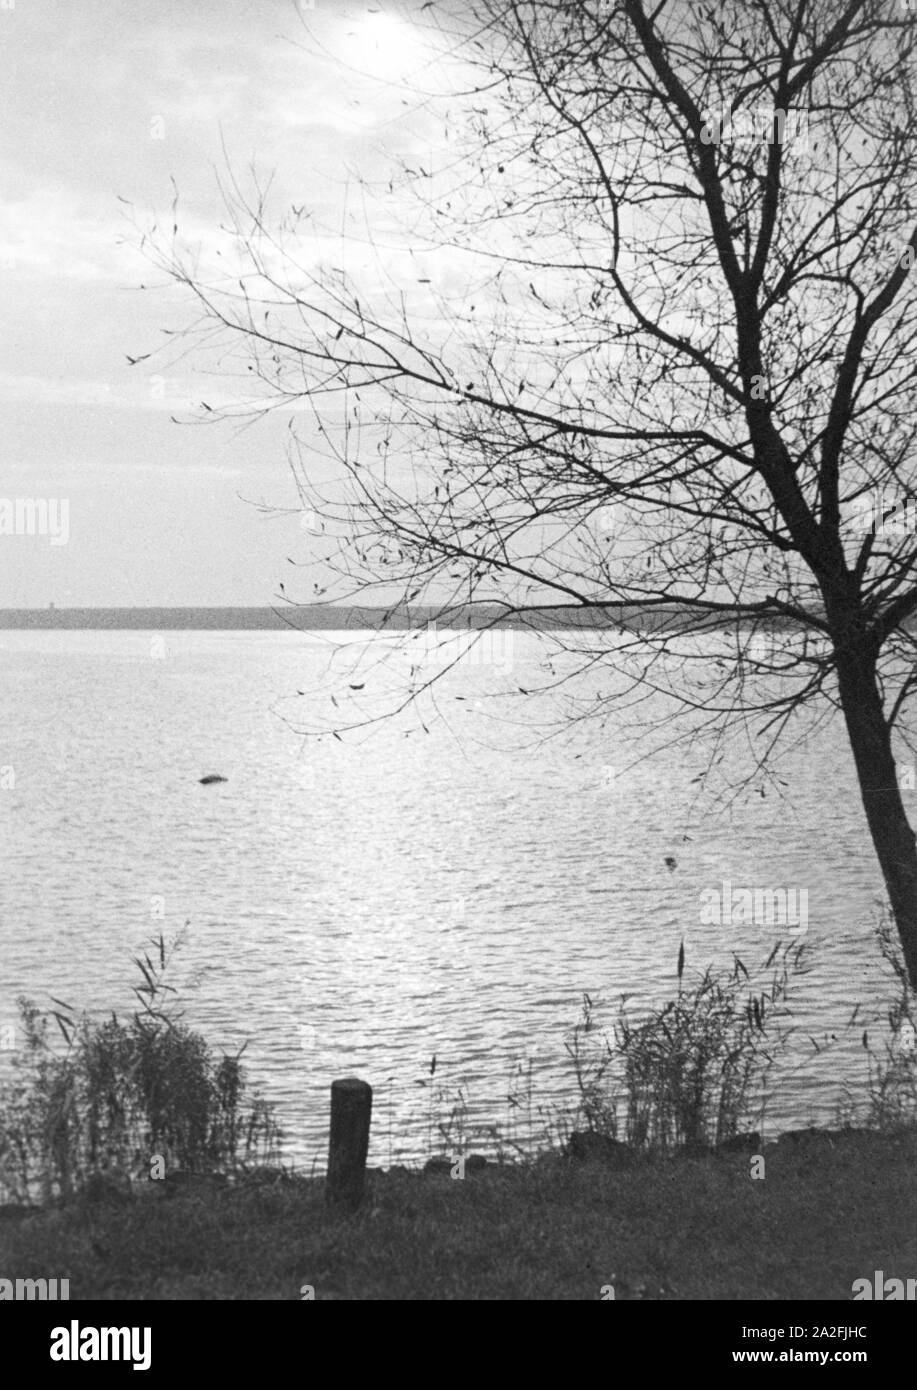 Uferlandschaft an einem See, Deutschland 1930er Jahre. Lake with a shore, Germany 1930s. Stock Photo